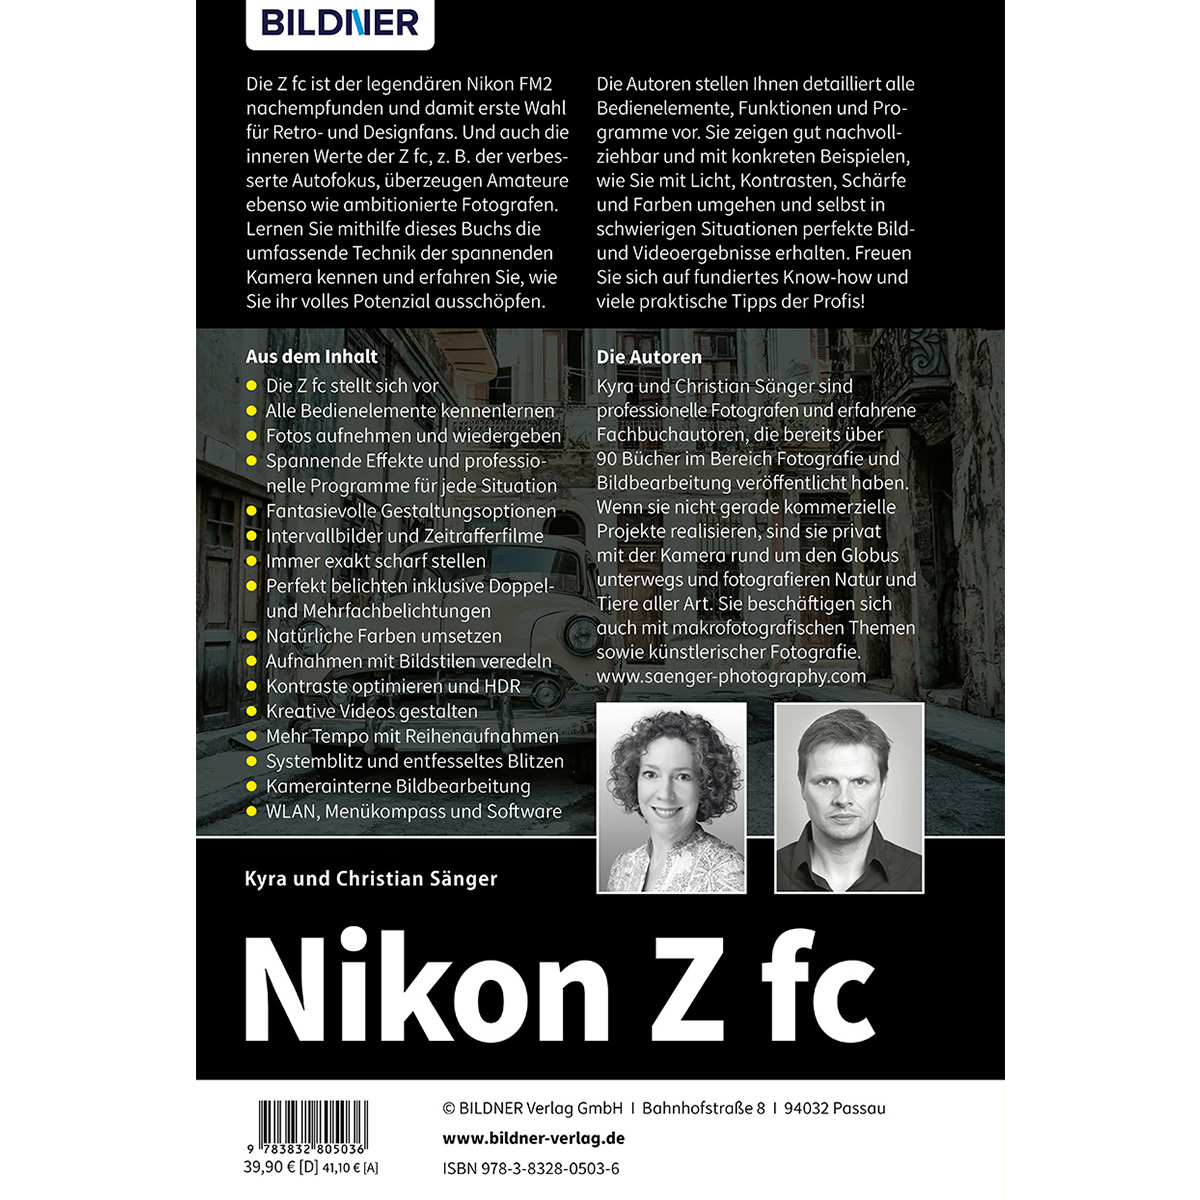 Kamera fc - Das Nikon zu Z Praxisbuch umfangreiche Ihrer